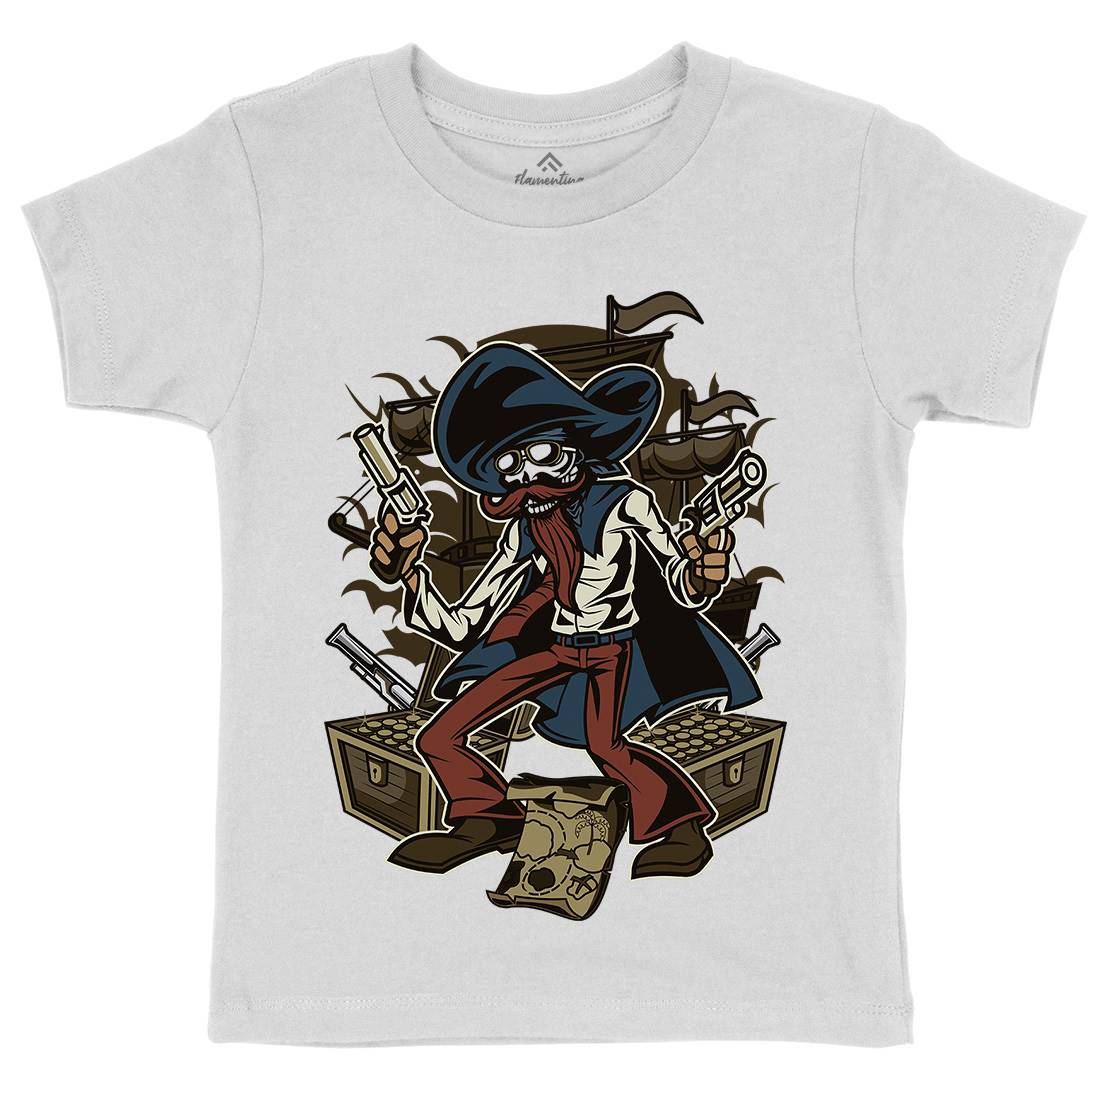 Pirate Treasure Kids Organic Crew Neck T-Shirt Navy C420